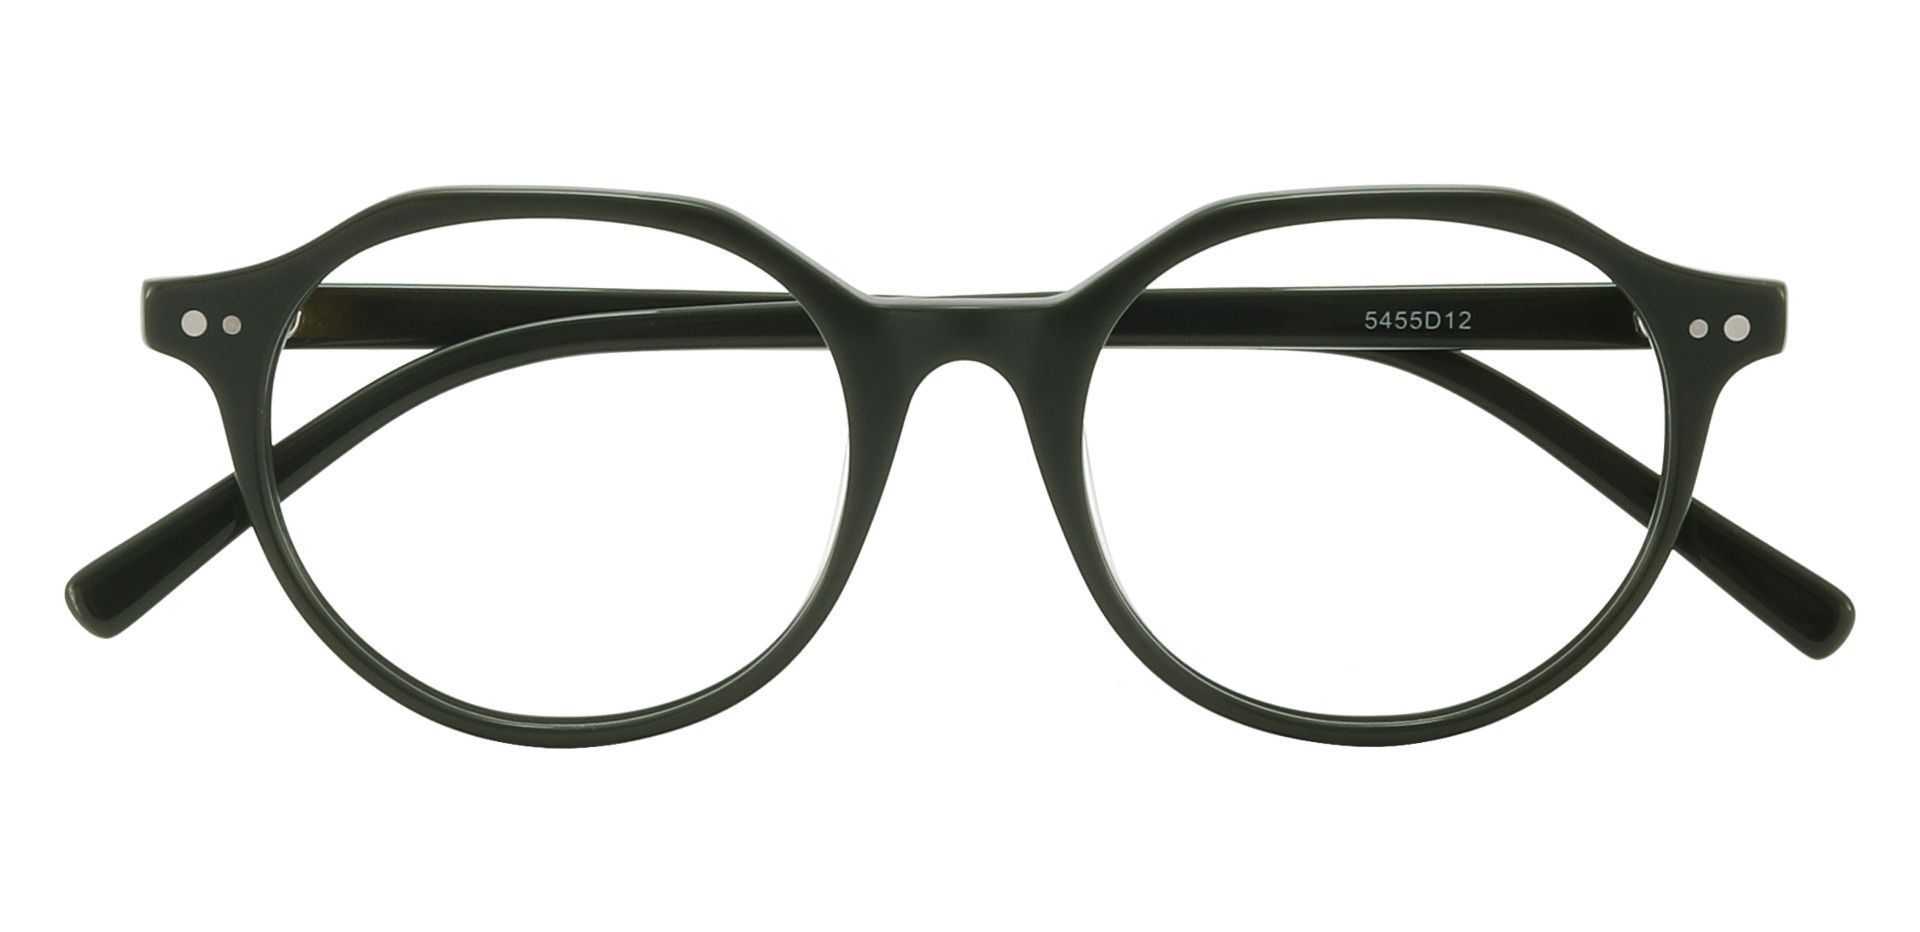 Nelson Round Prescription Glasses - Green | Women's Eyeglasses | Payne ...